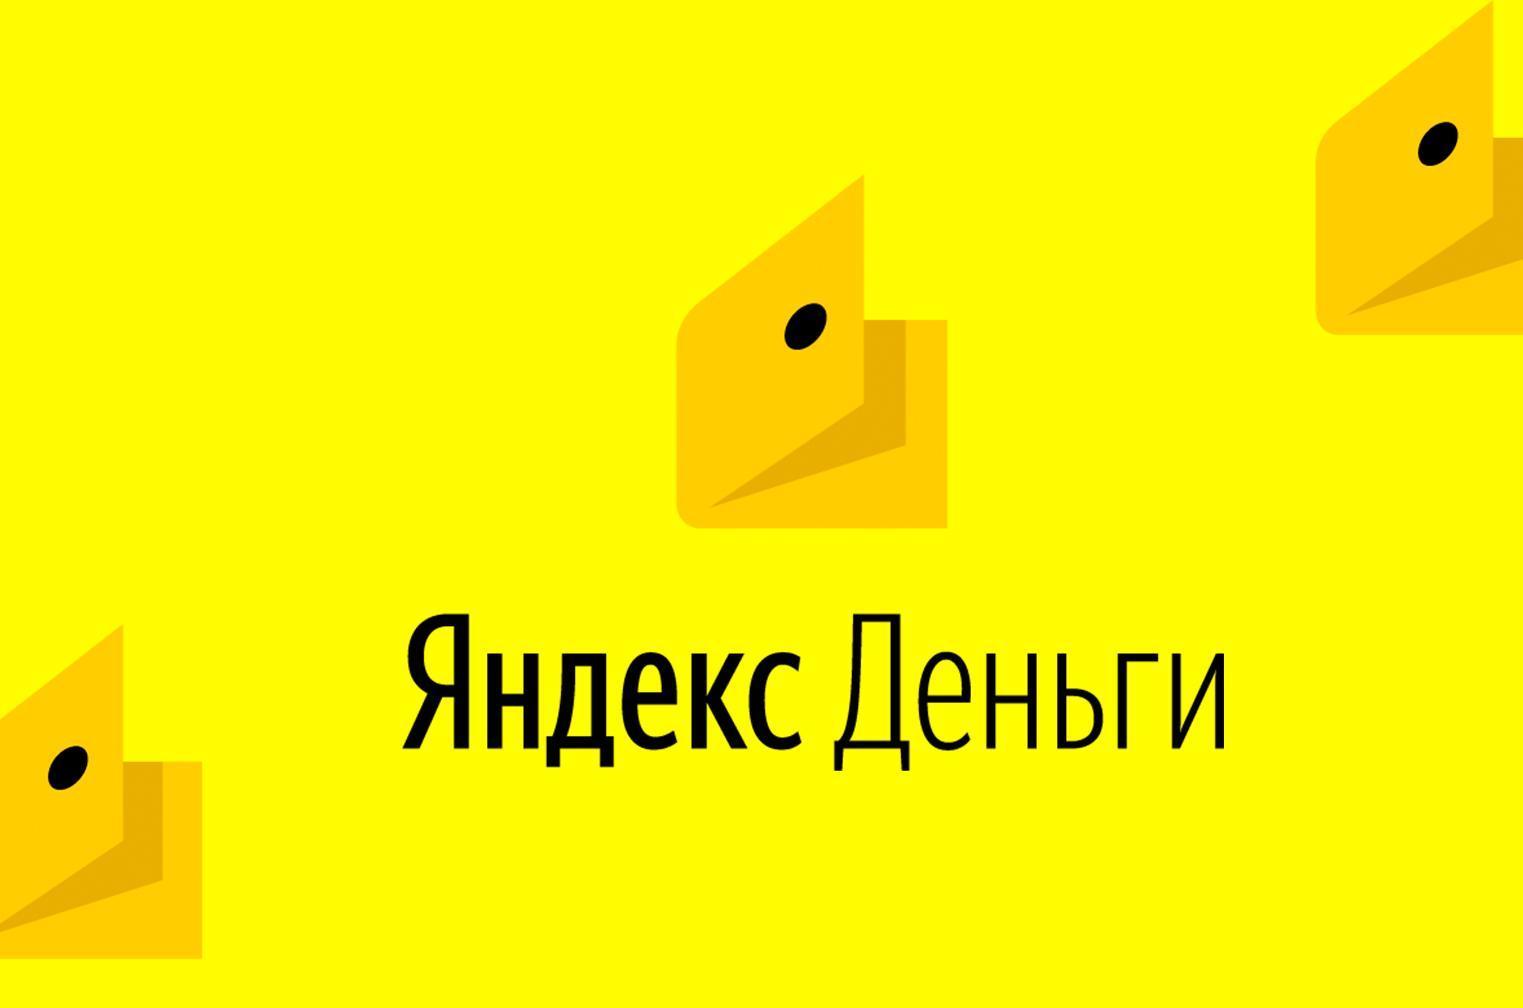 Яндекс деньги кошелек